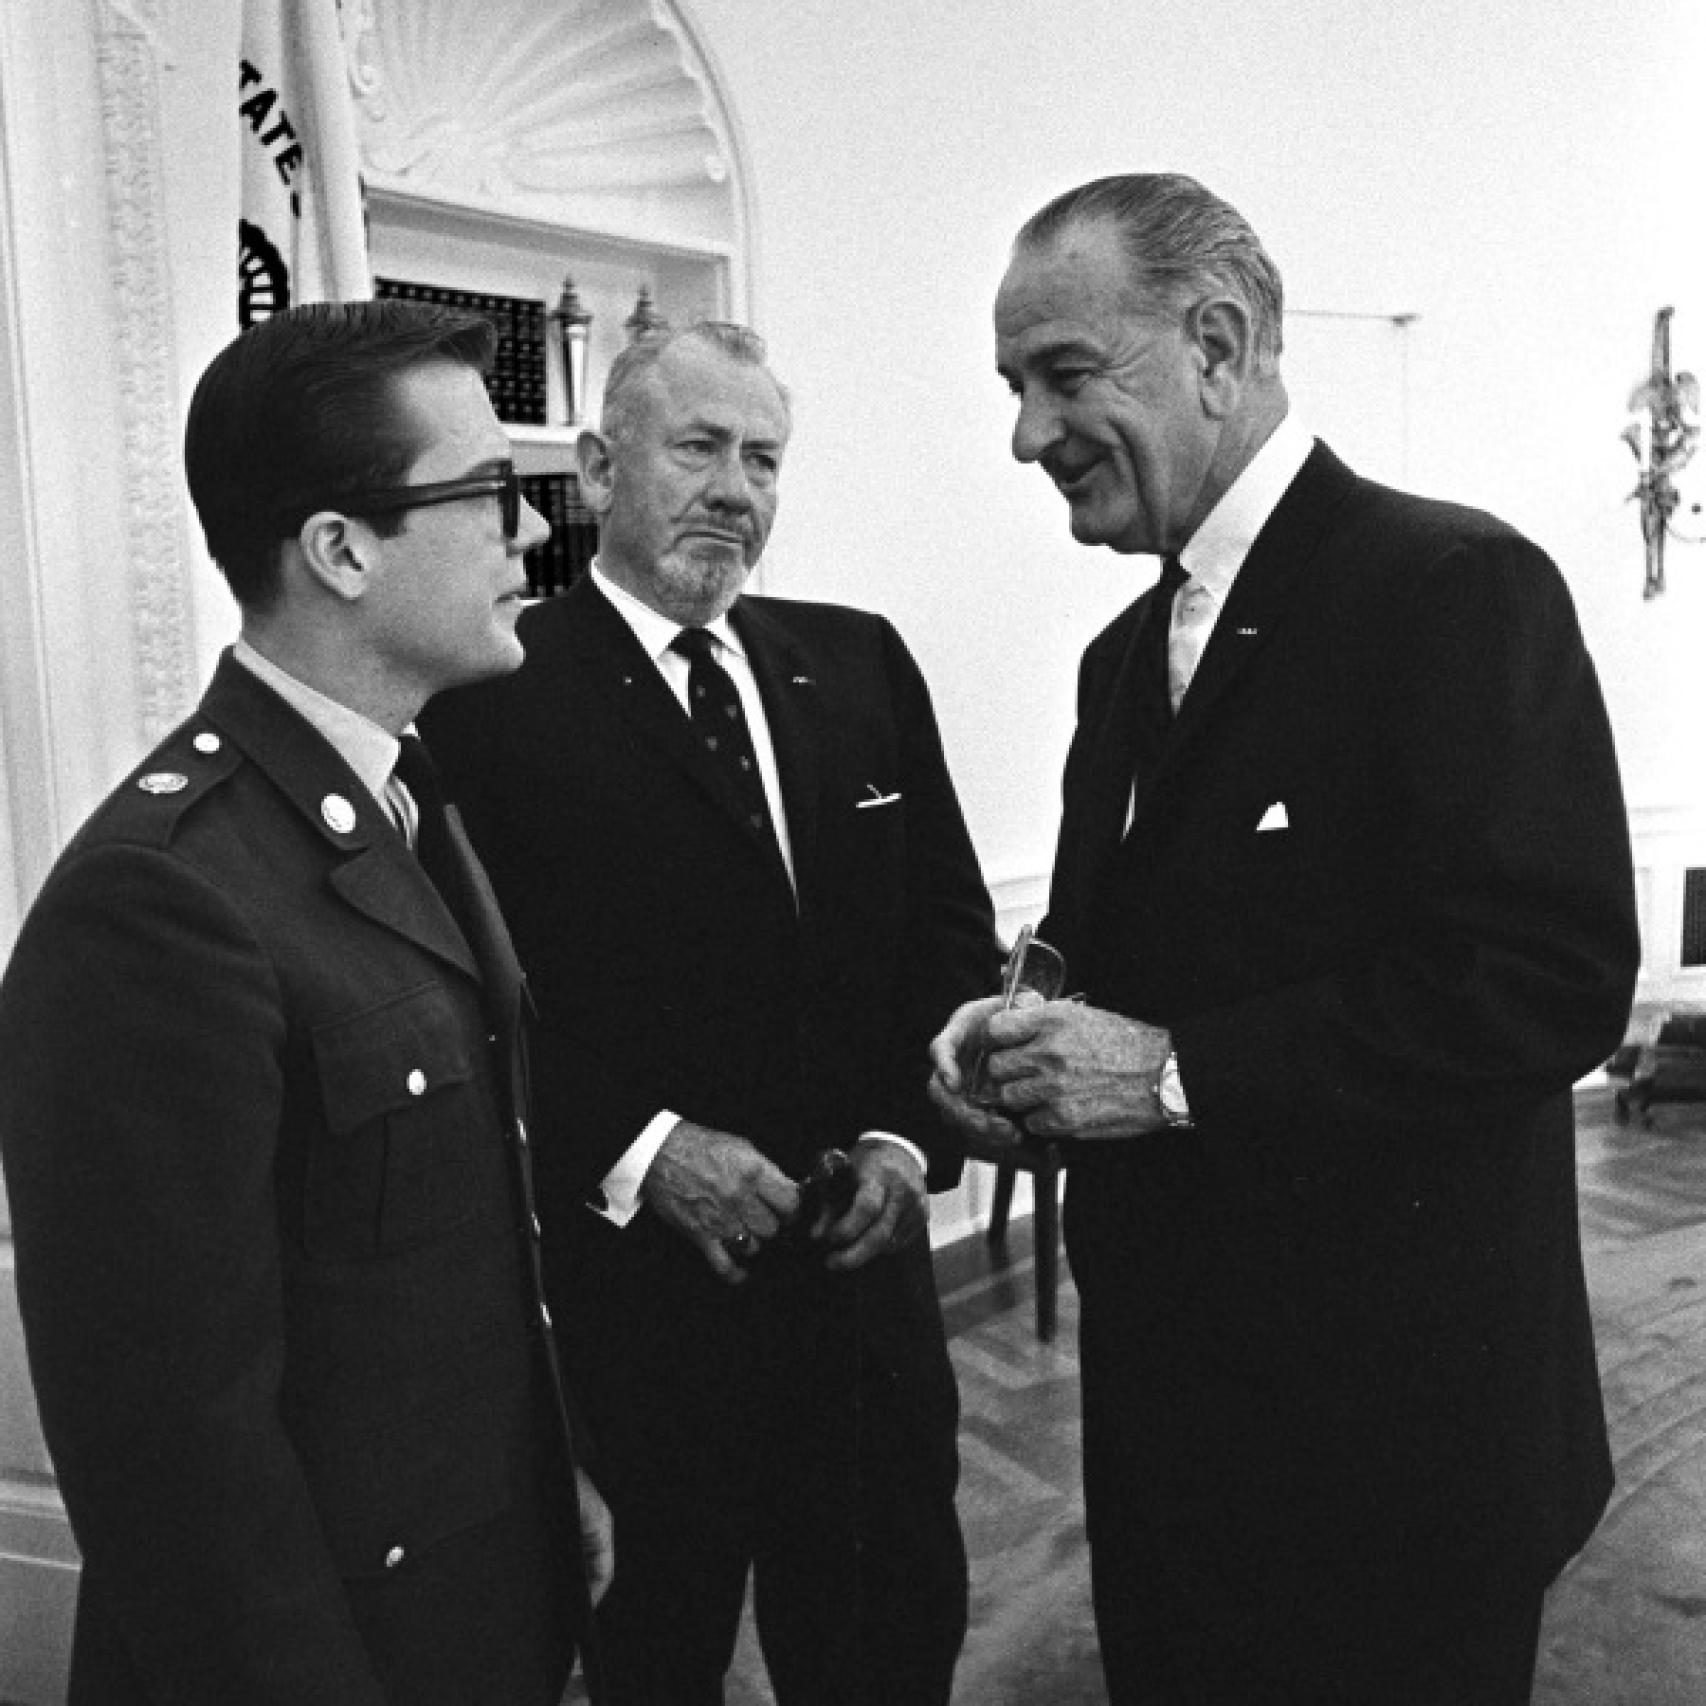 JohnSteinbeck, en el centro, junto al presidente Lyndon B. Johnson y su hijo (19).